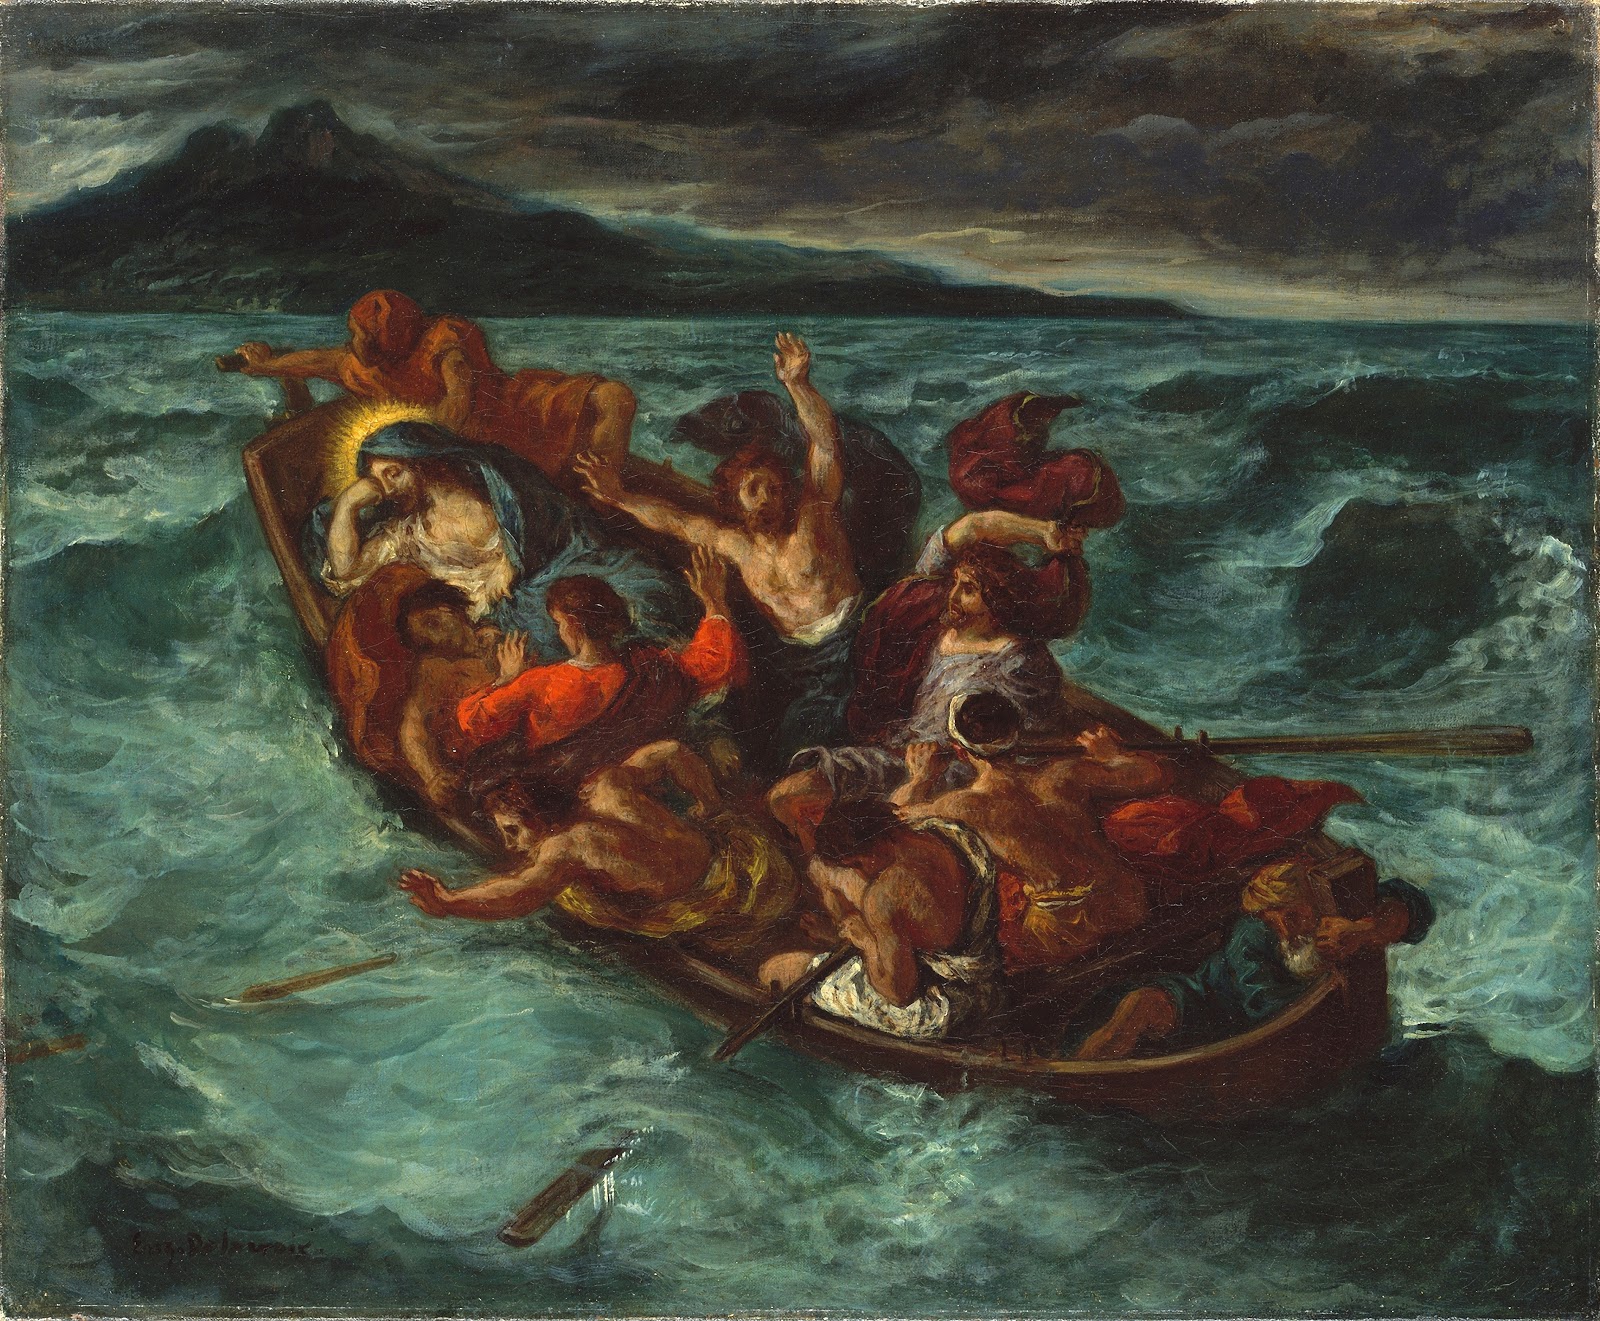 Eugene+Delacroix-1798-1863 (102).jpg